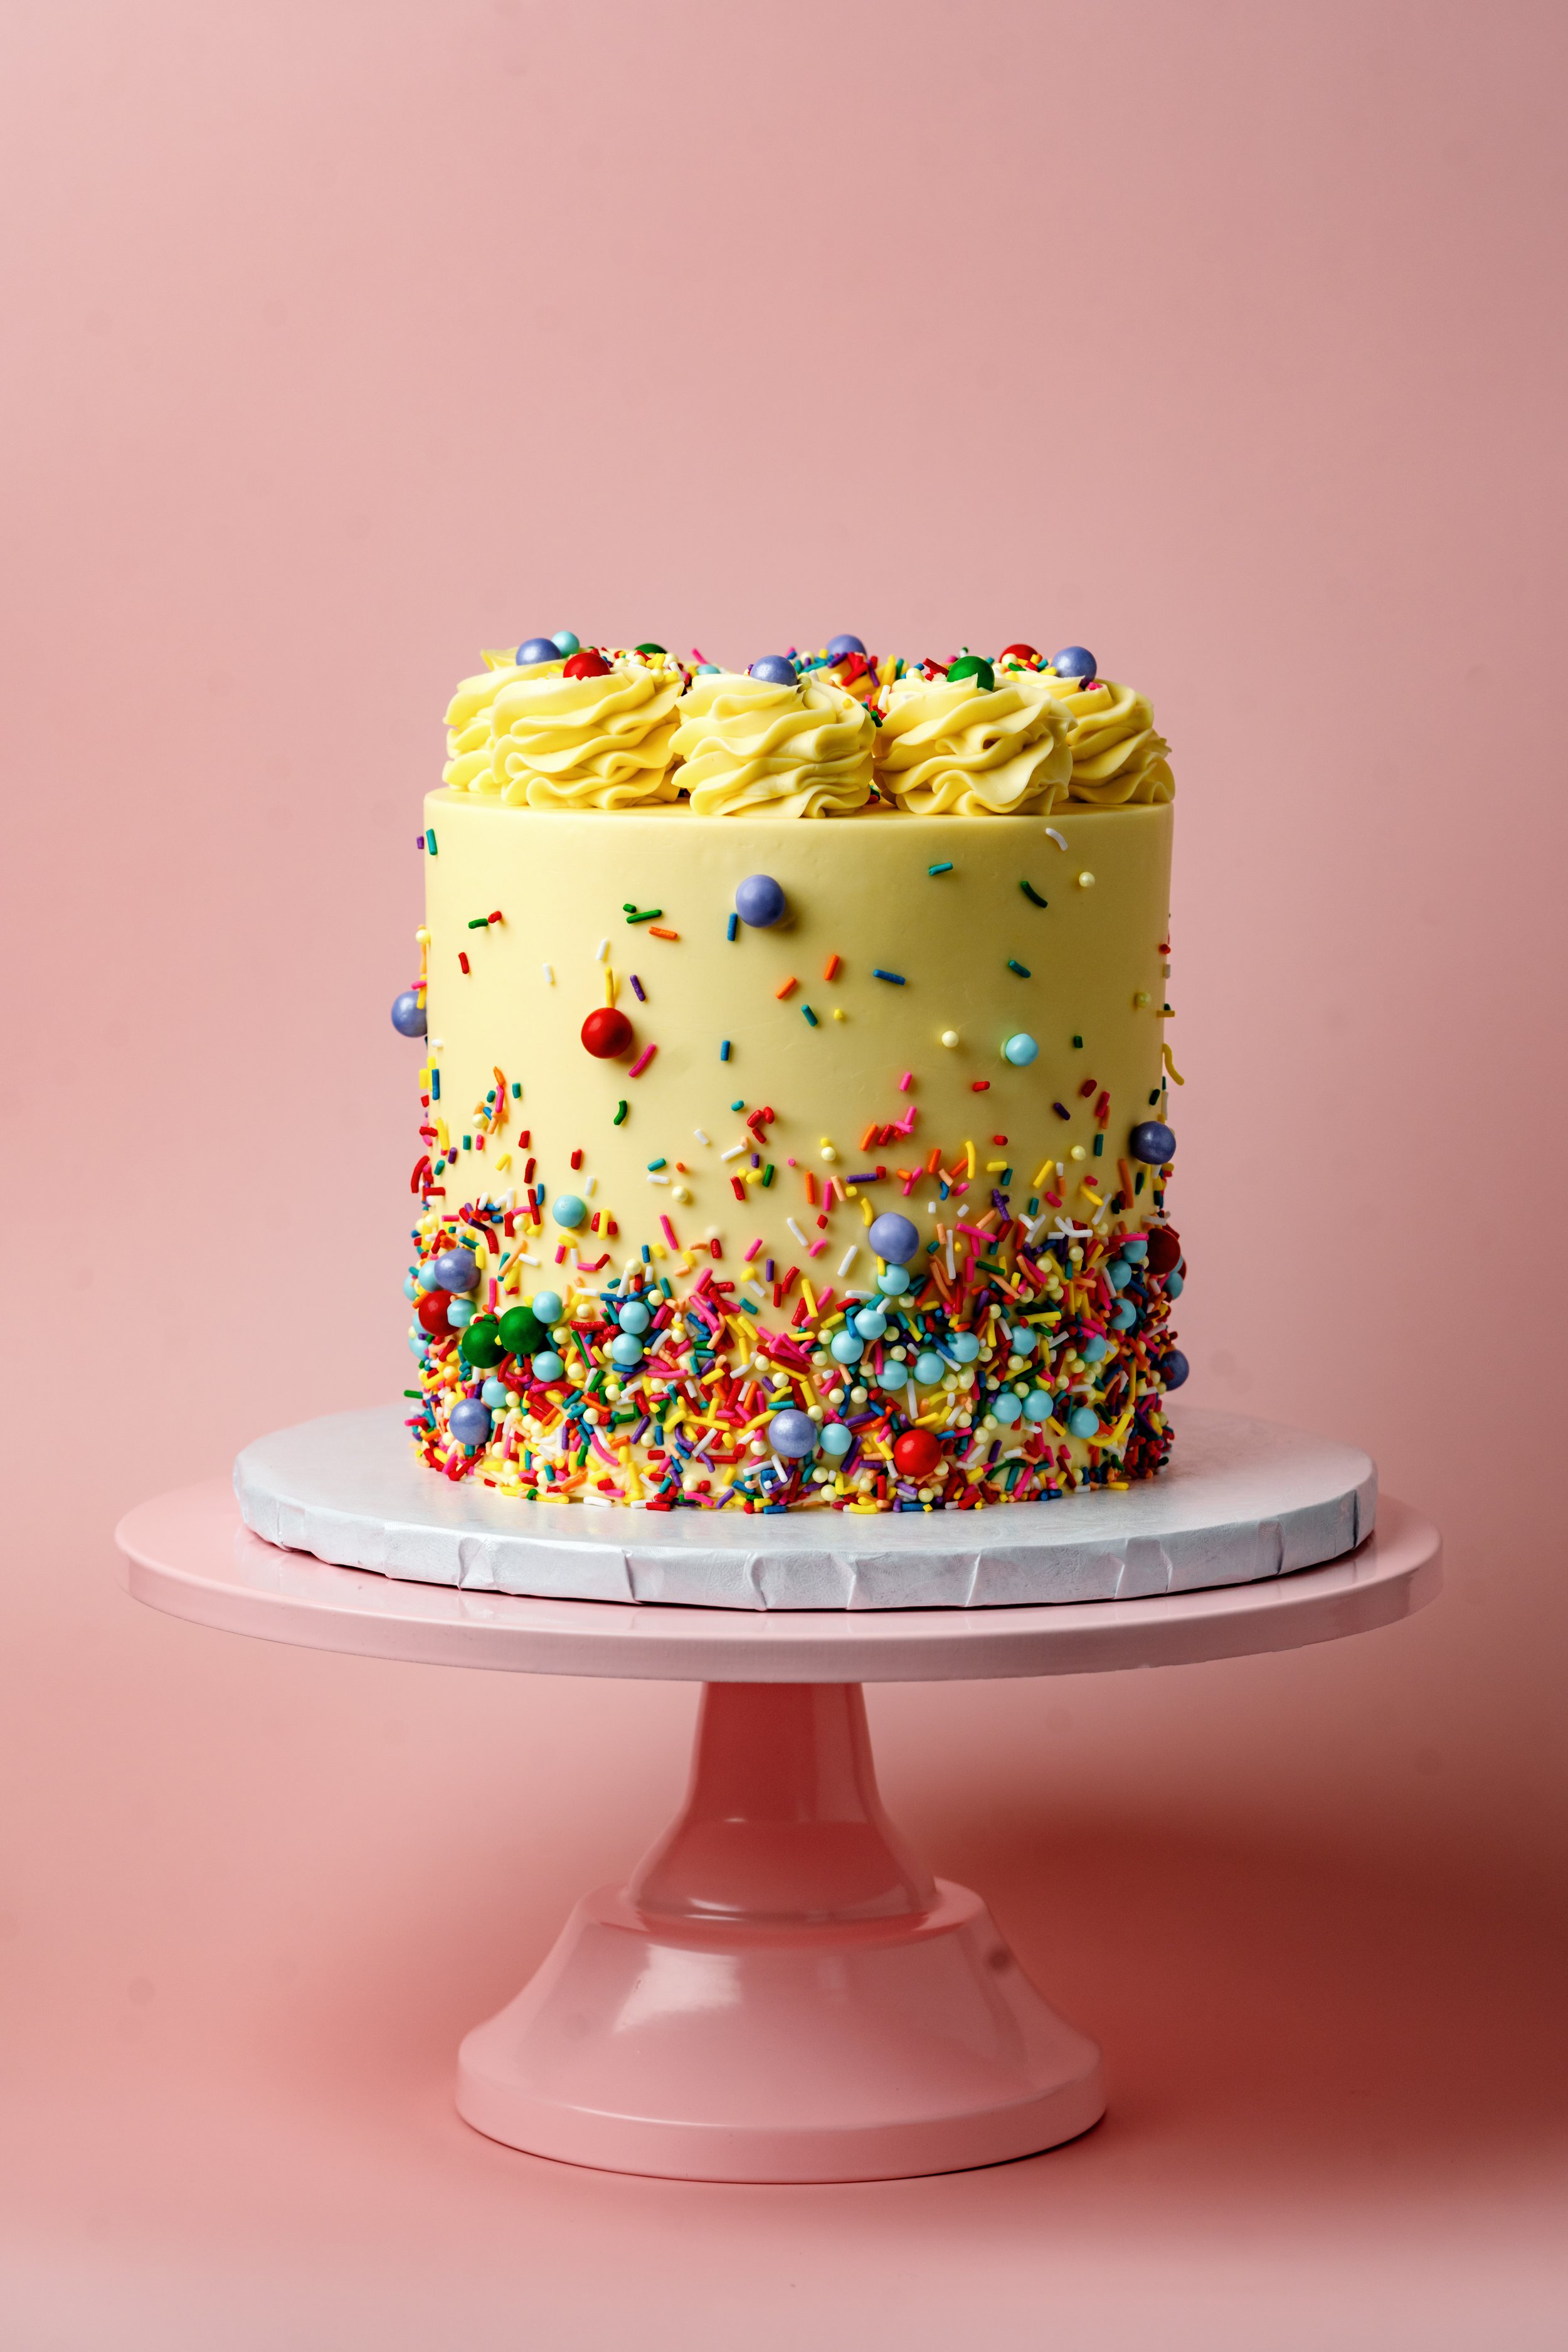 ECBG Cake Studio Custom Chicago Bakery Cakes Sprinkle Party 1.jpg